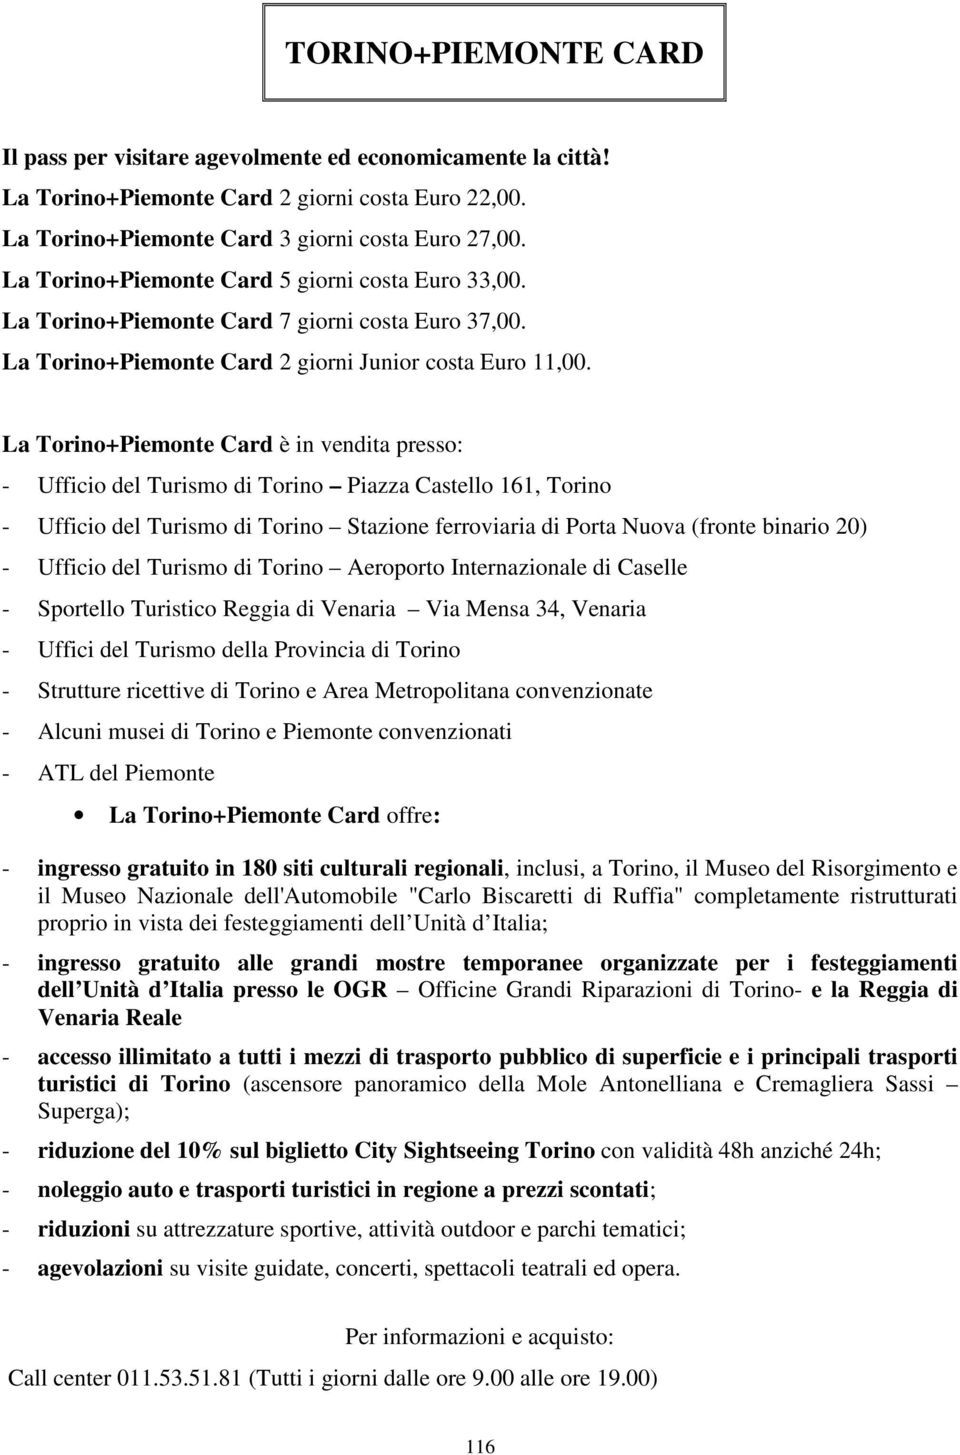 La Torino+Piemonte Card è in vendita presso: - Ufficio del Turismo di Torino Piazza Castello 161, Torino - Ufficio del Turismo di Torino Stazione ferroviaria di Porta Nuova (fronte binario 20) -